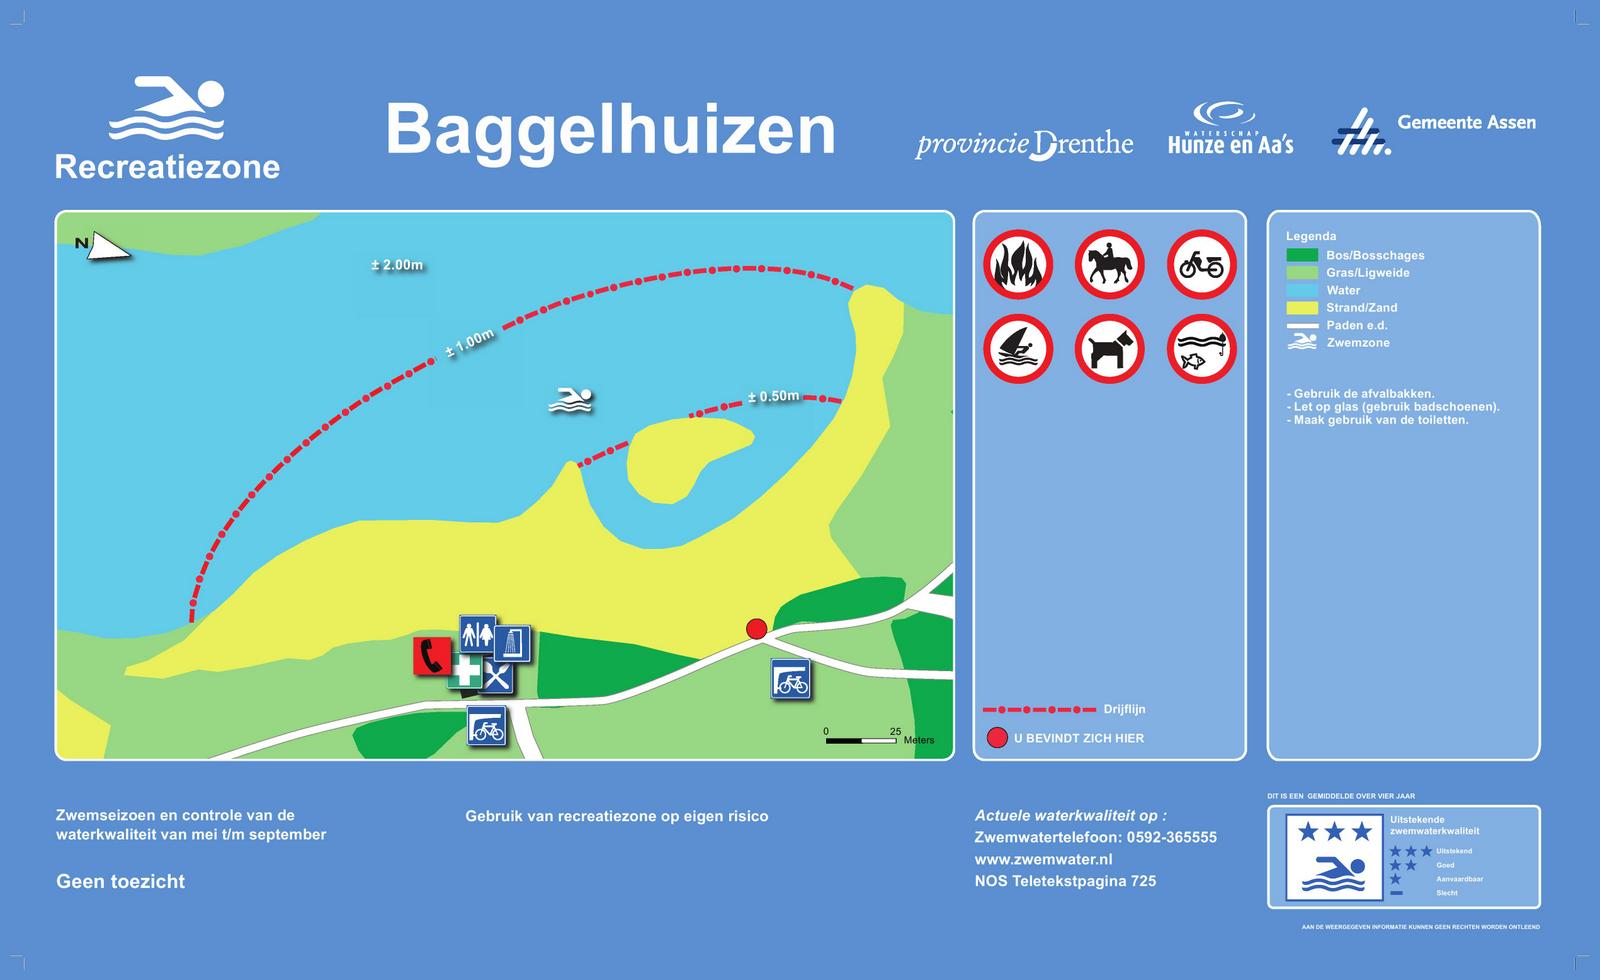 Het informatiebord bij zwemlocatie Baggelhuizen